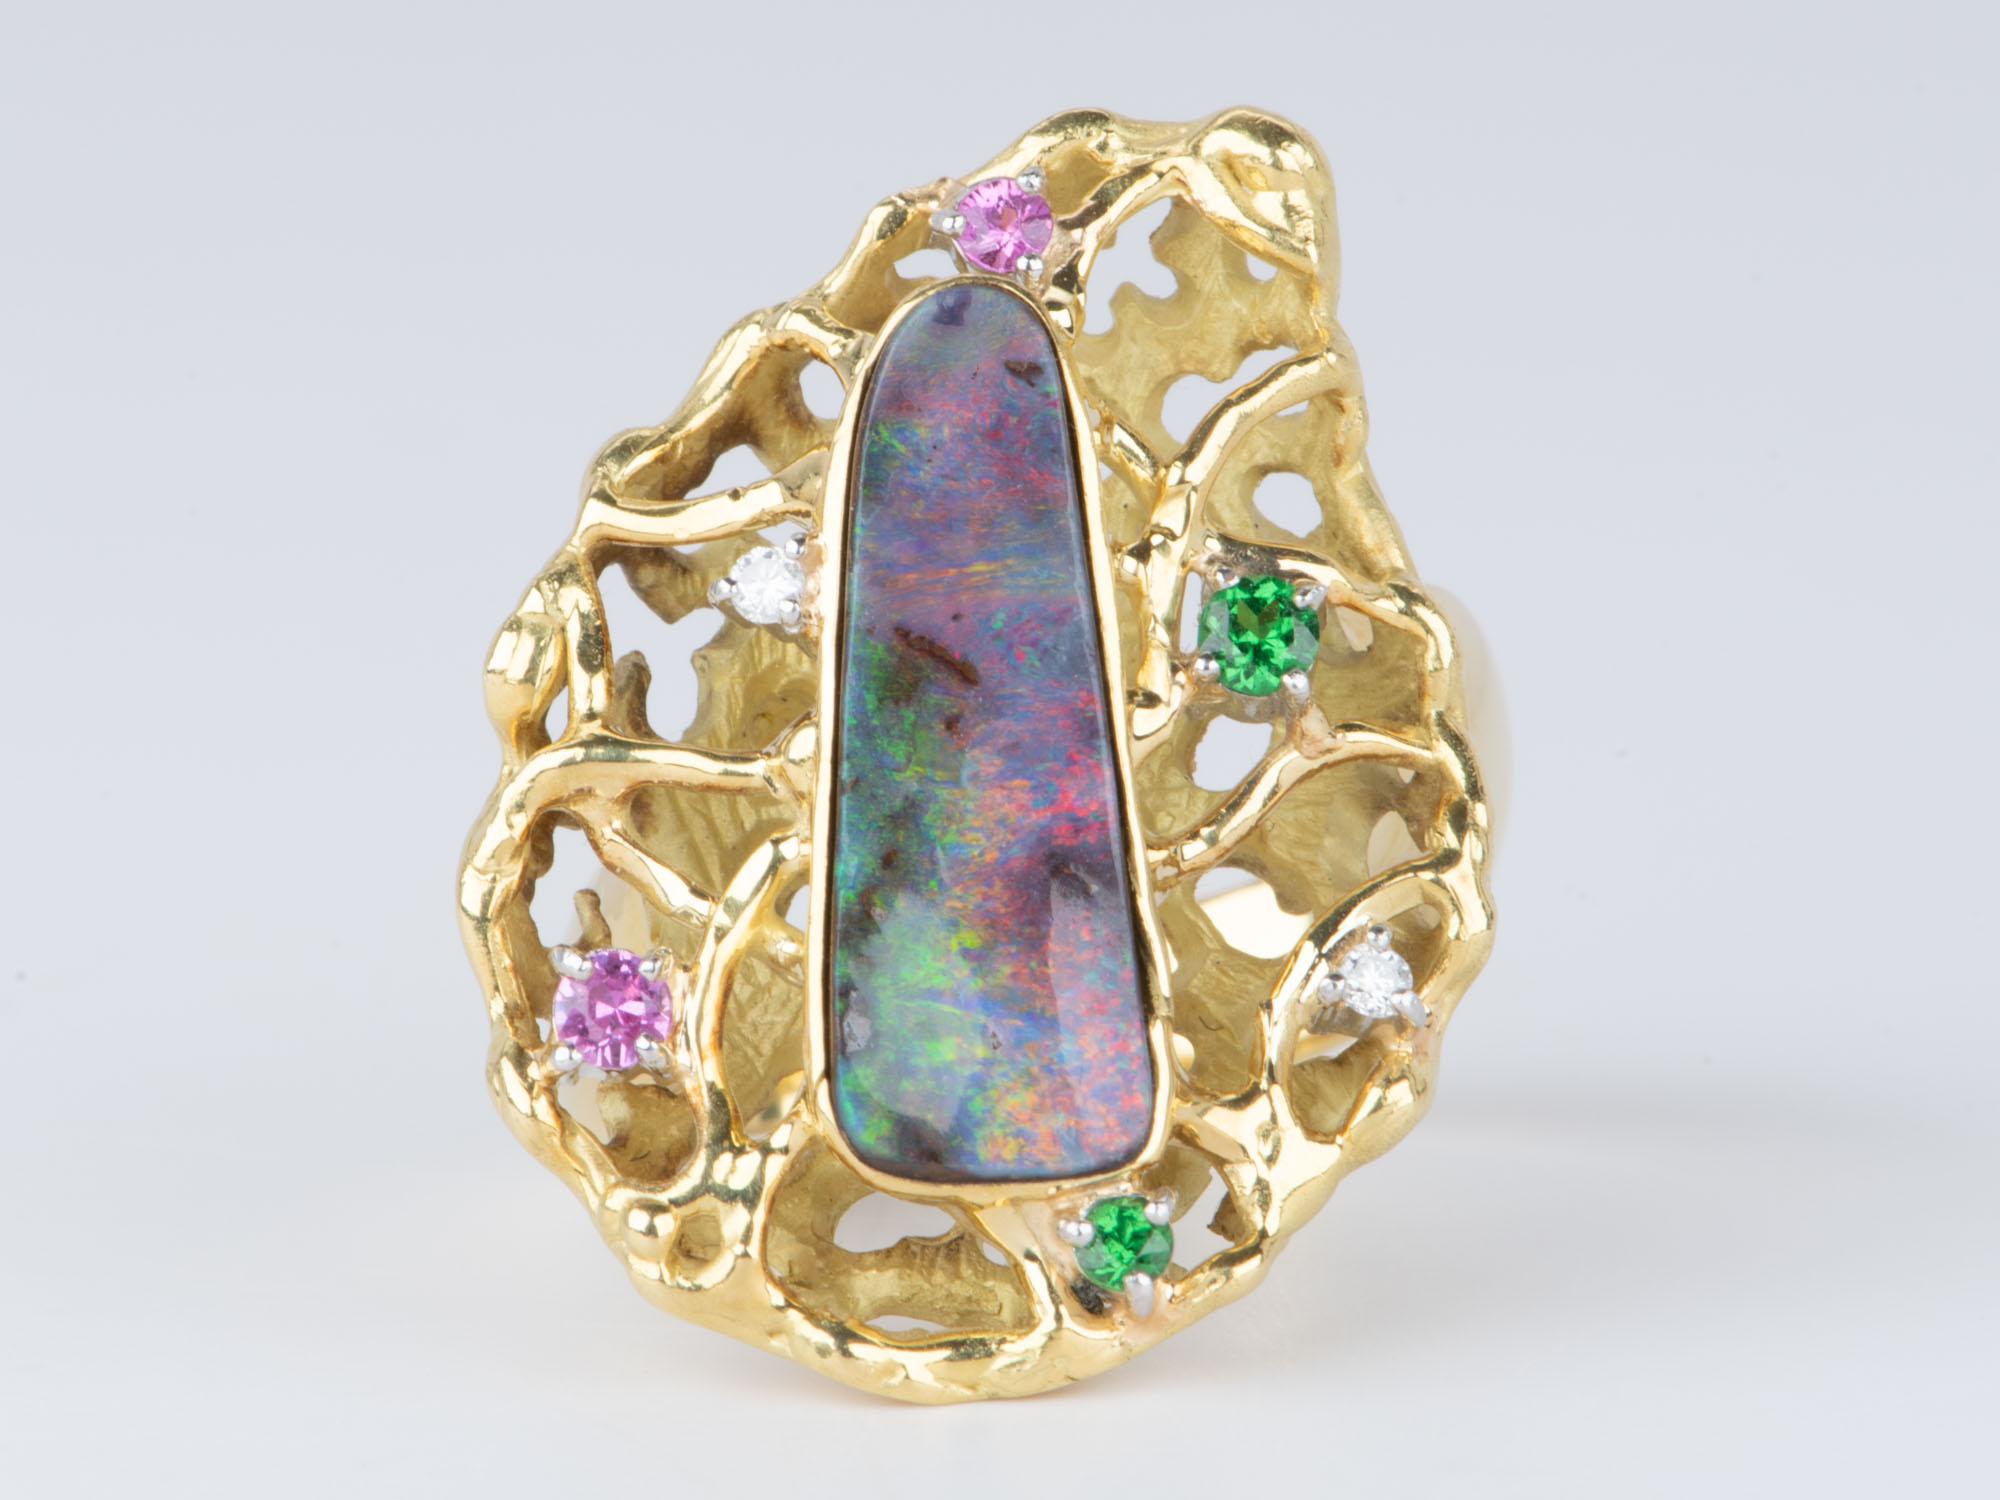 Dieser exquisite Ring ist aus einem einzigartigen australischen Boulder-Opal gefertigt, der in einen modernistischen, organischen Blumenkopf aus massivem 18-karätigem Gold eingefasst ist. Das farbenfrohe und verschlungene Design ist perfekt für